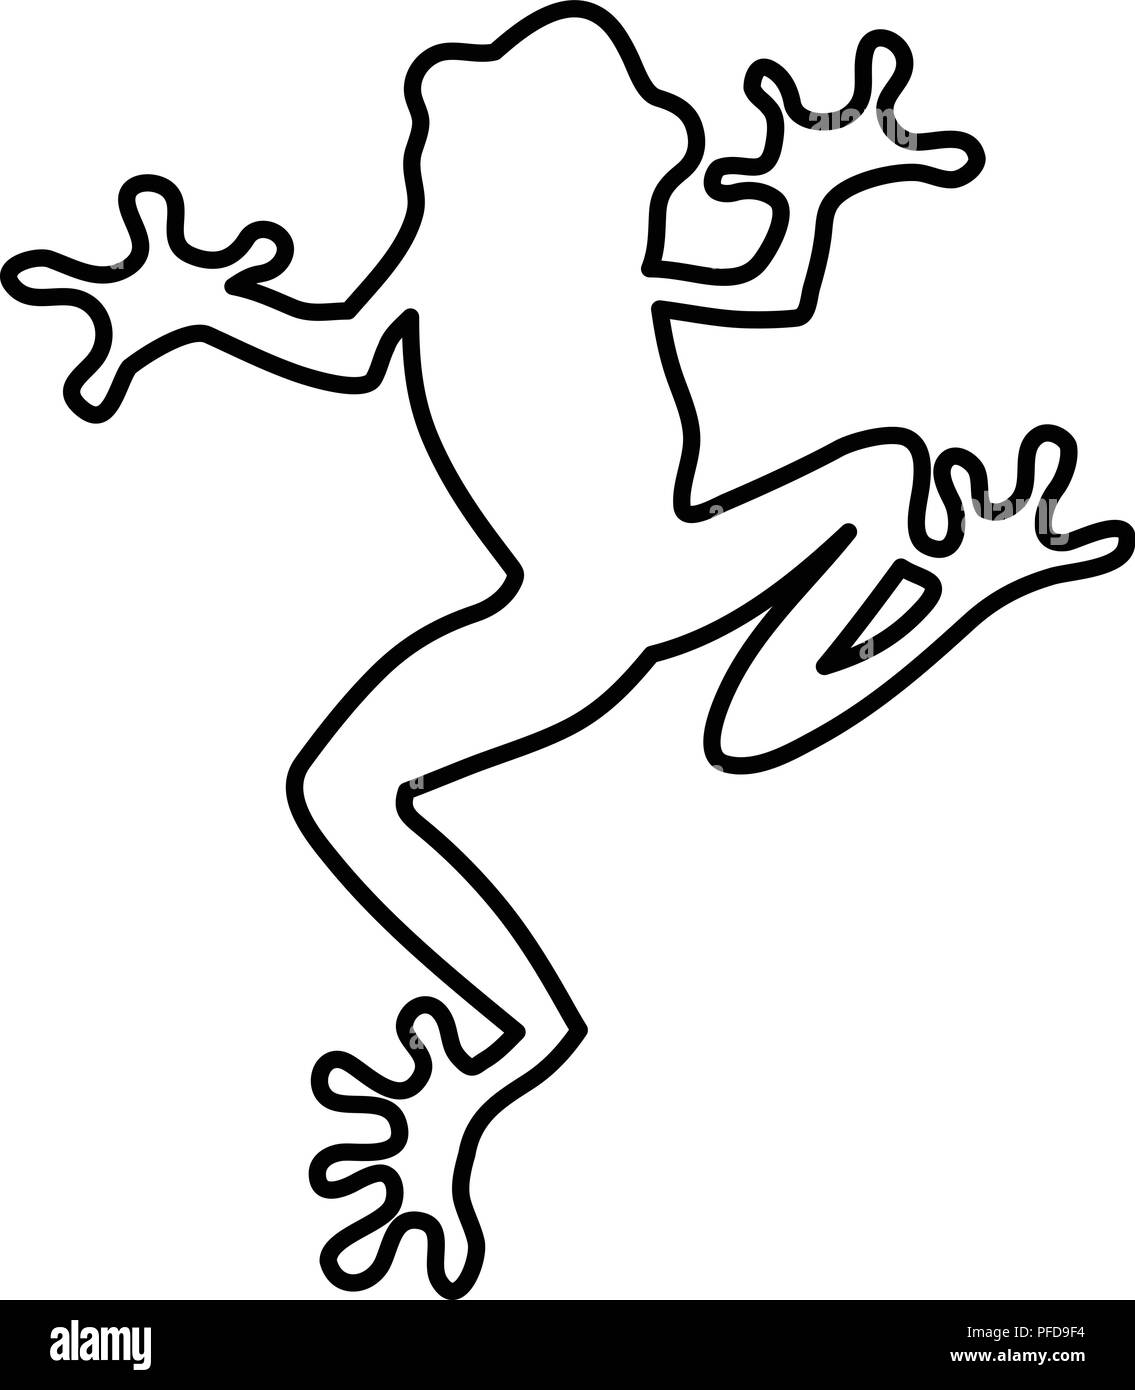 Lignes de grenouille. illustration vectorielle pour coloriage crapaud grenouille adultes. lignes noir et blanc hop frog crapaud motif dentelle. Illustration de Vecteur